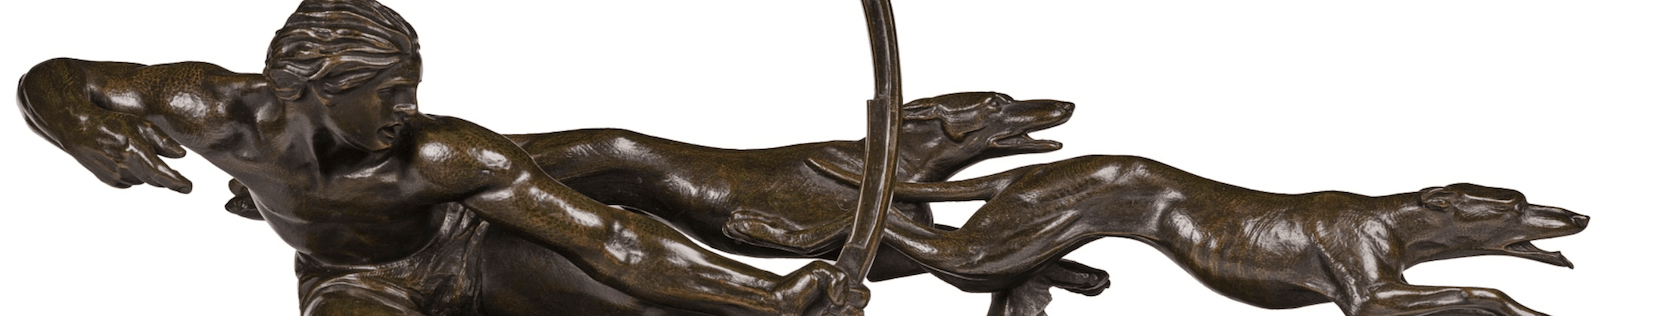 Антикварная бронзовая скульптура